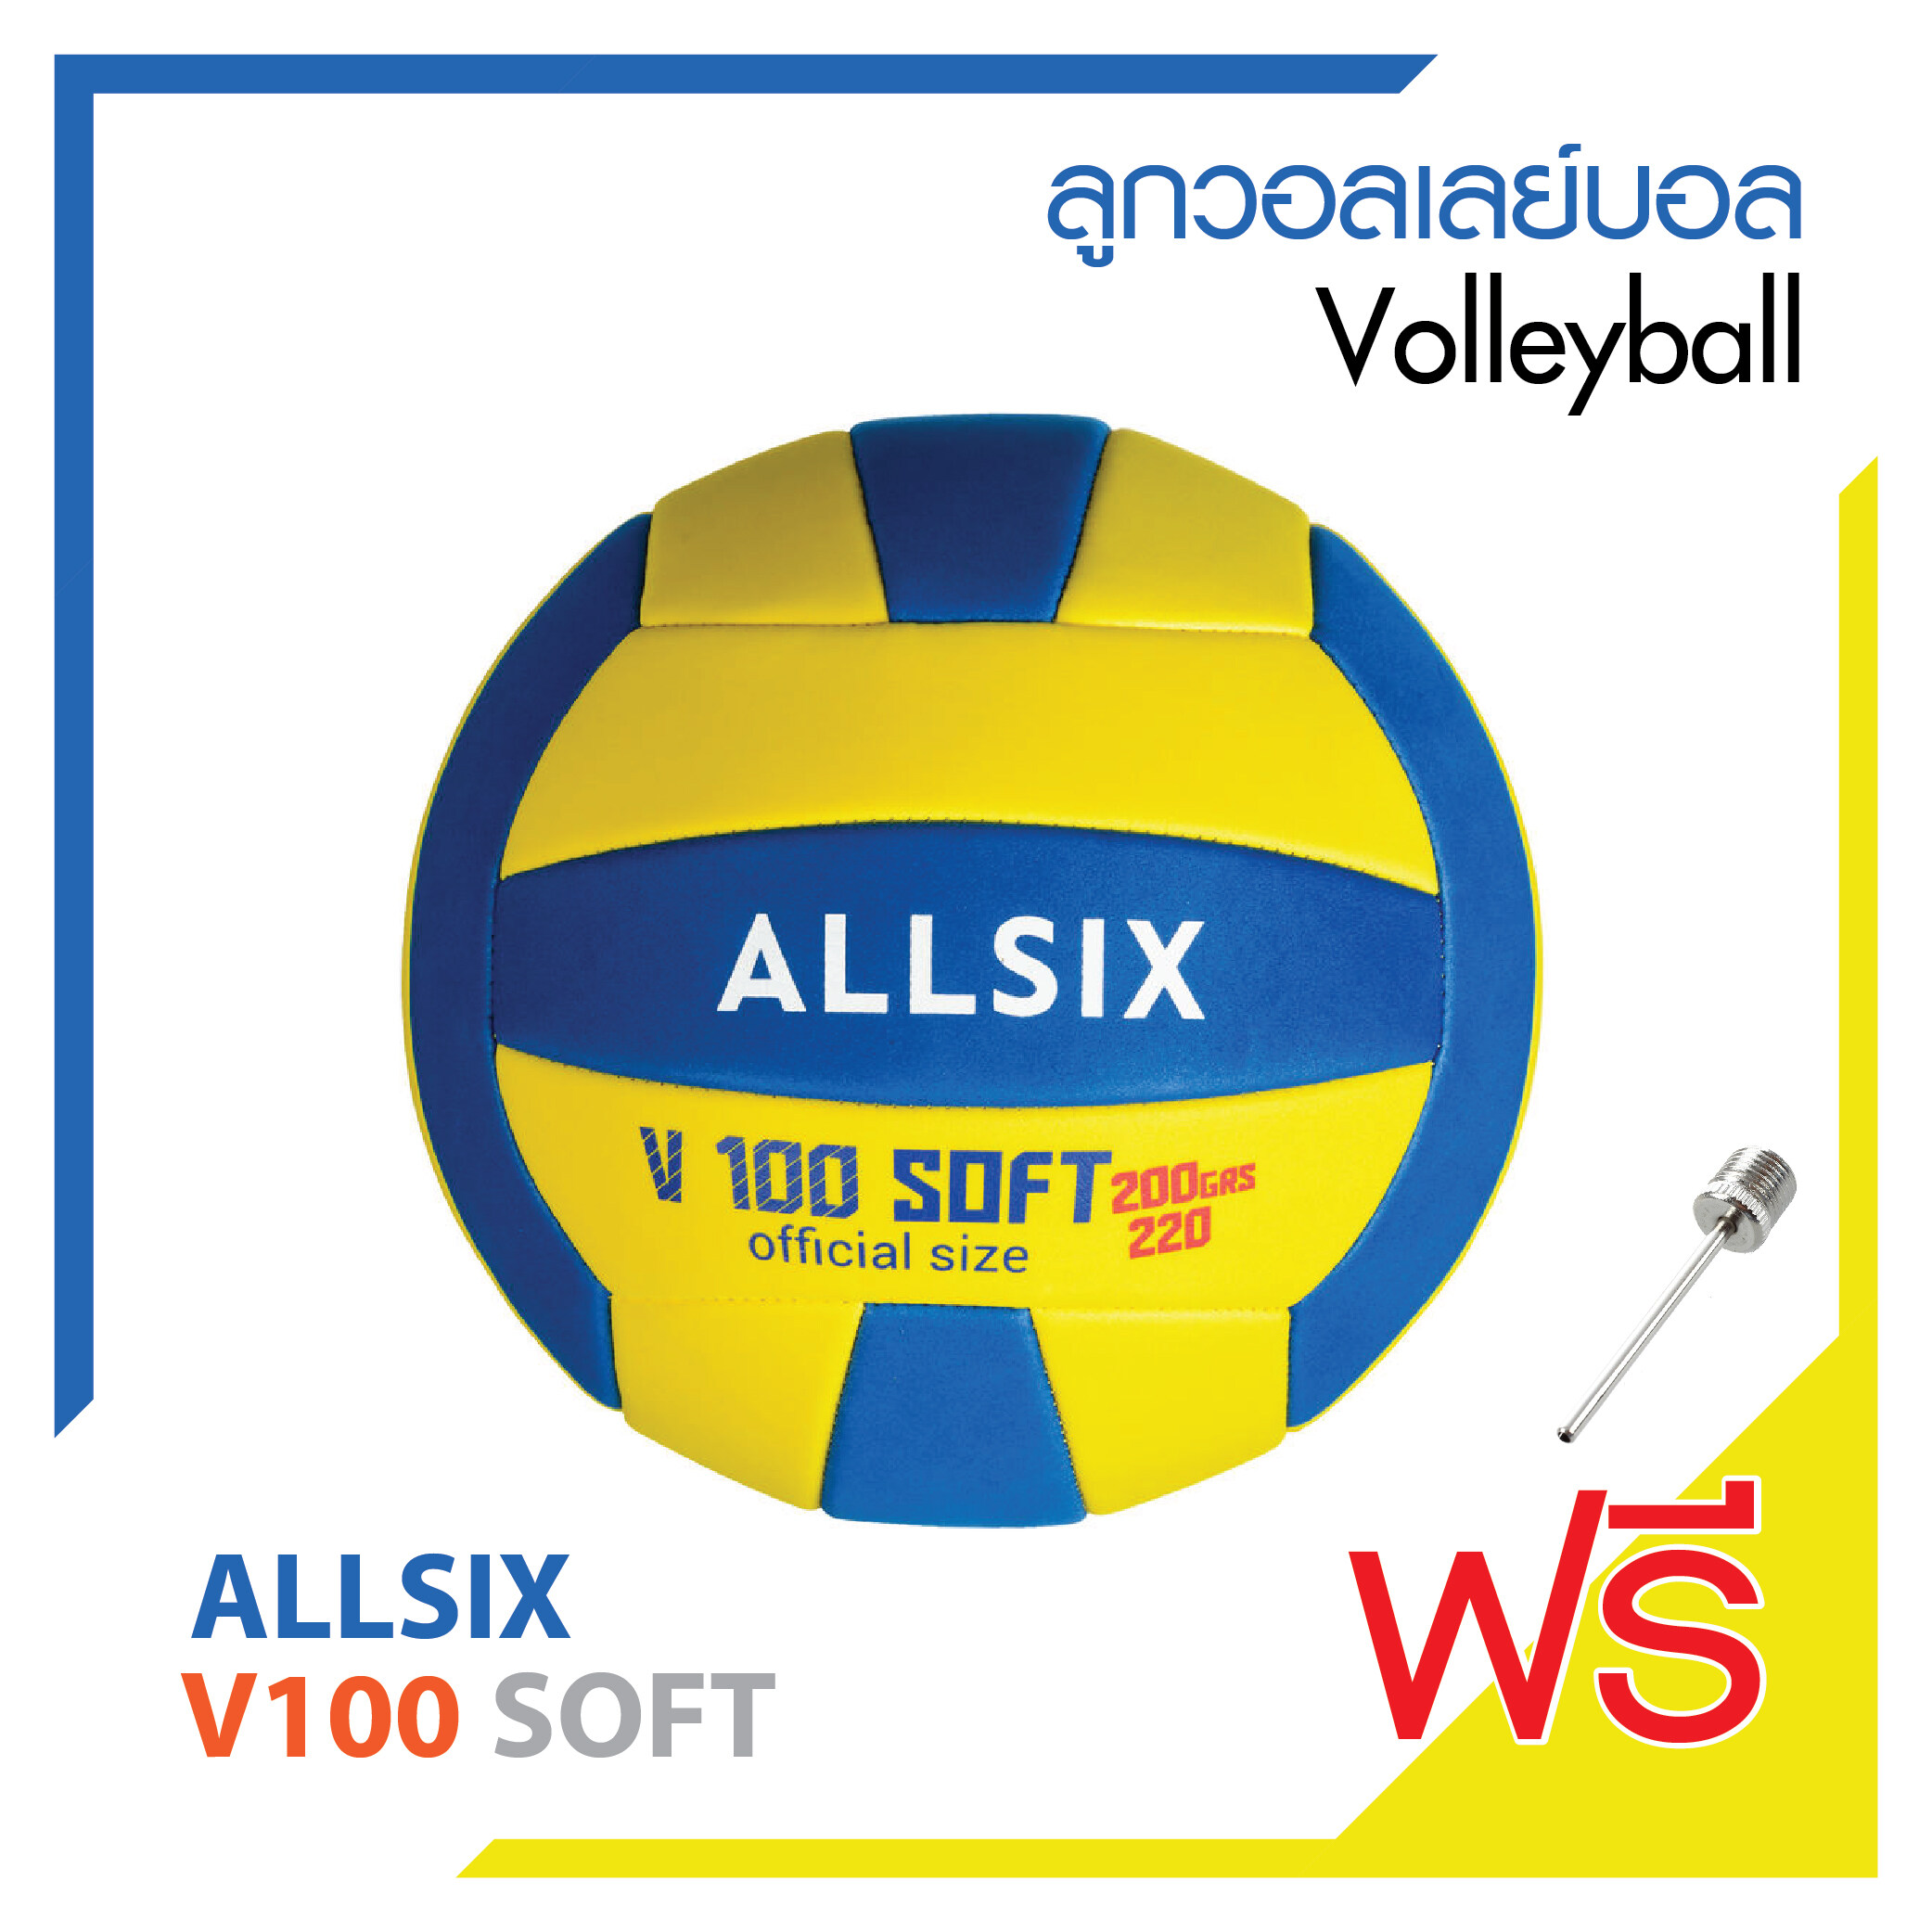 ลูกวอลเลย์บอล วอลเลย์บอล Soft ยี่ห้อ ALLSIX SOFT Soft Volleyball สินค้าคุณภาพดี โฟมเนื้อนุ่มน้ำหนักเบา !!  ลดพิเศษสุด